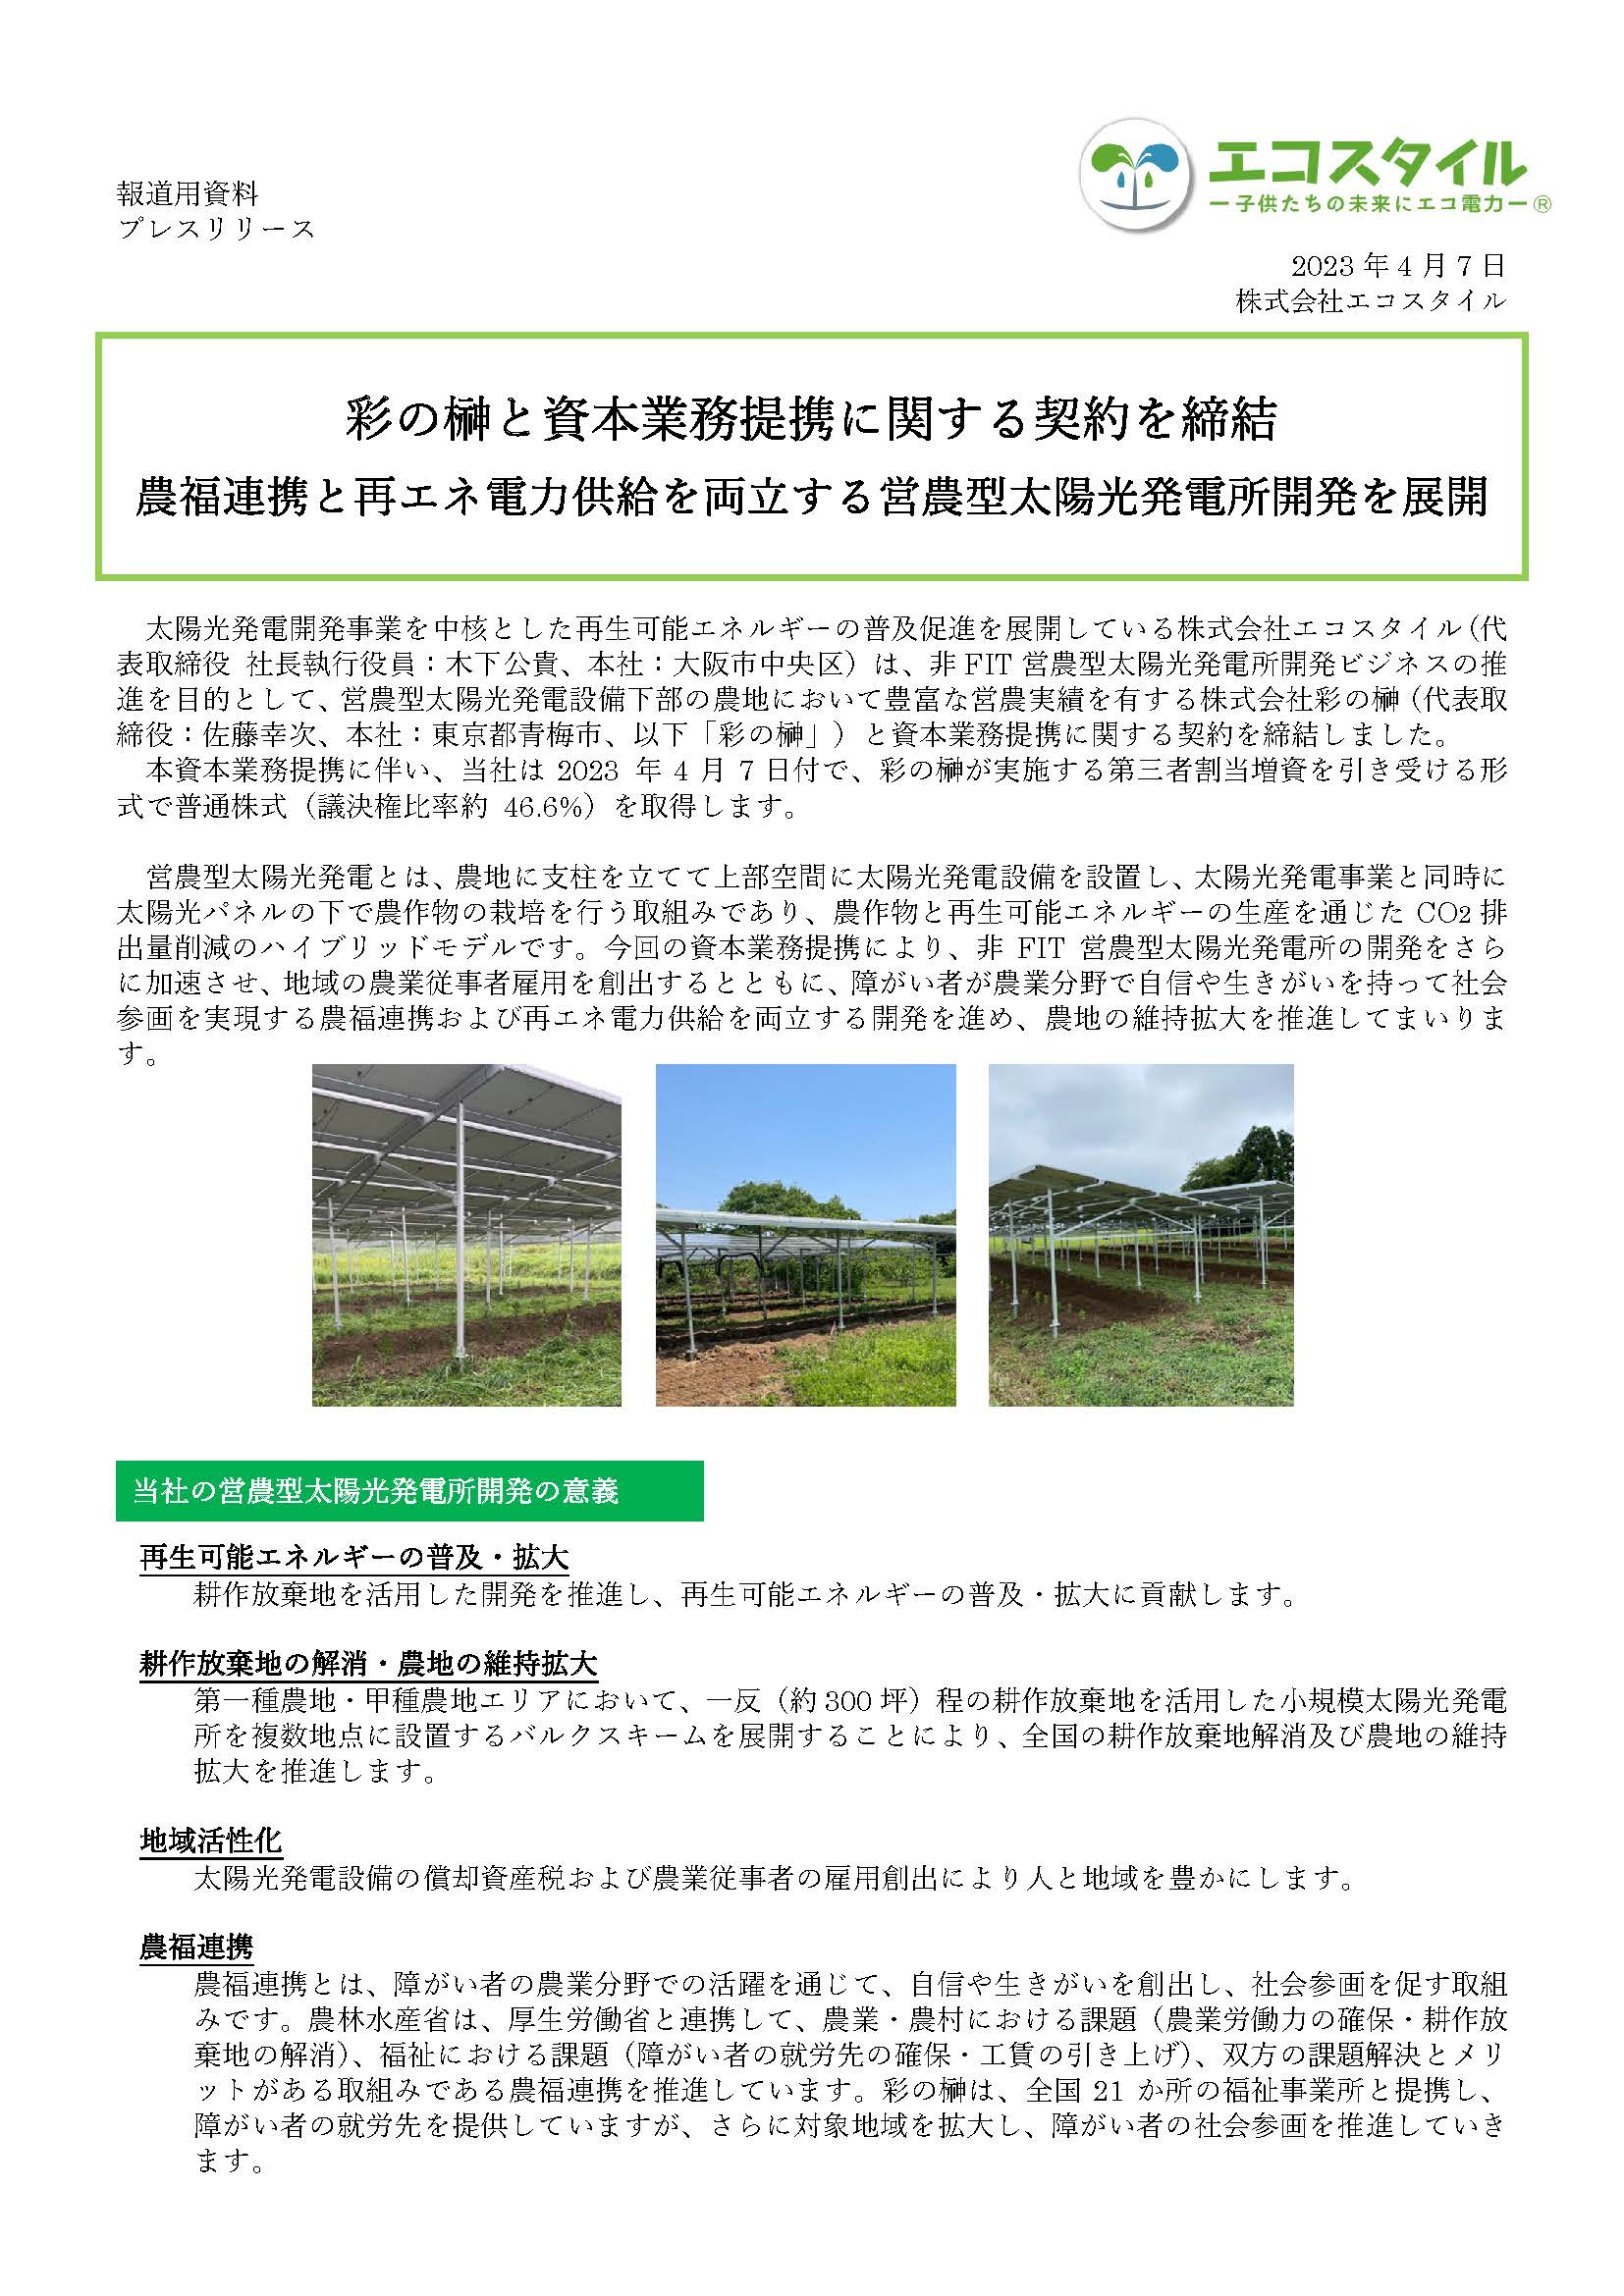 彩の榊と資本業務提携に関する契約を締結 農福連携と再エネ電力供給を両立する営農型太陽光発電所開発を展開